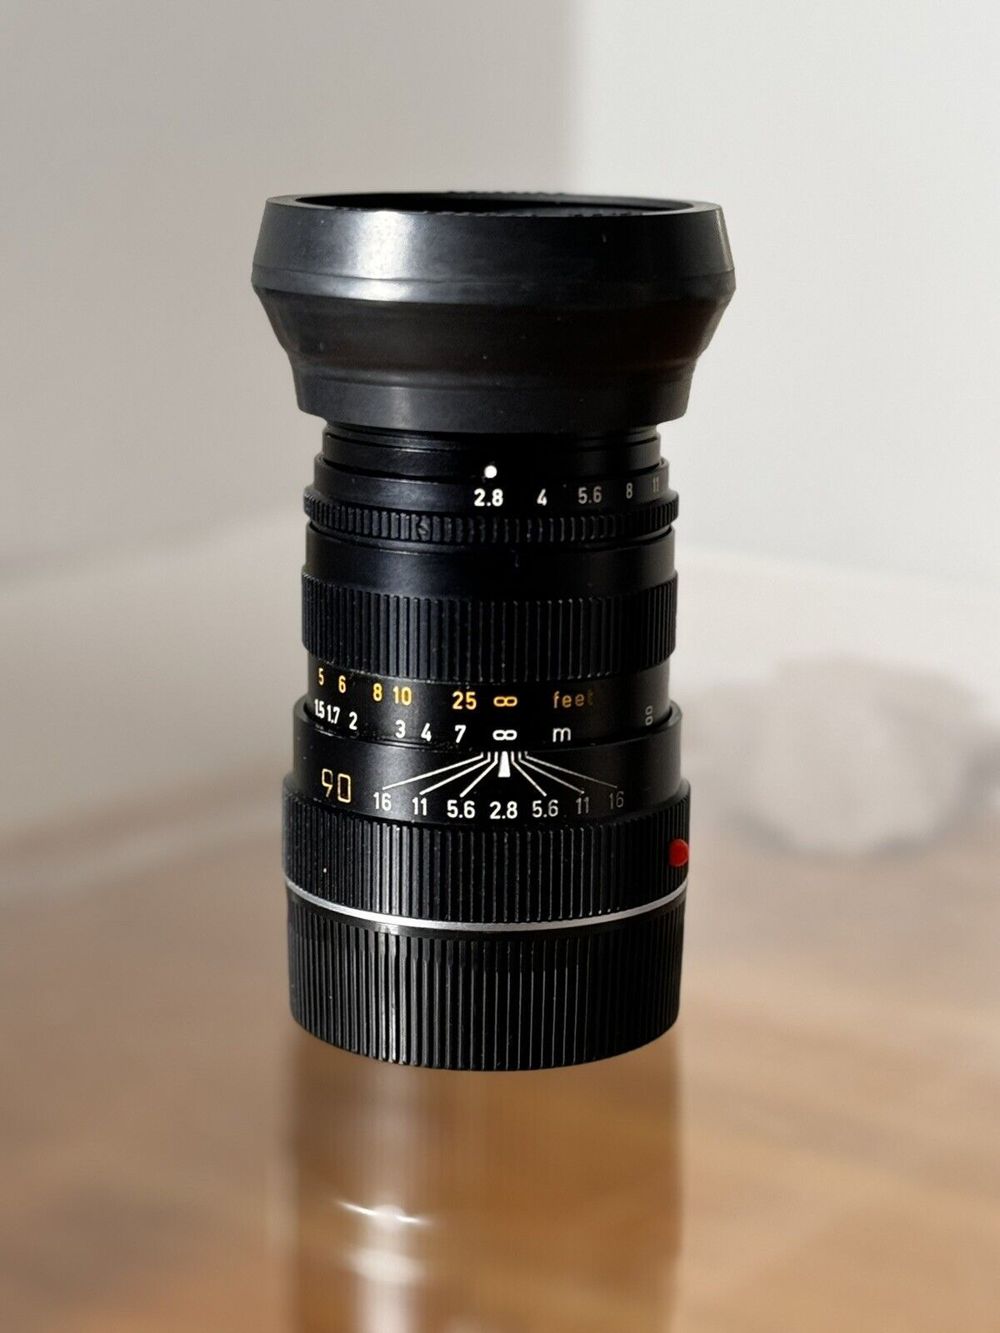  Leitz Lens Made In Canada Tele-Elmarit-M 1:2.8 90